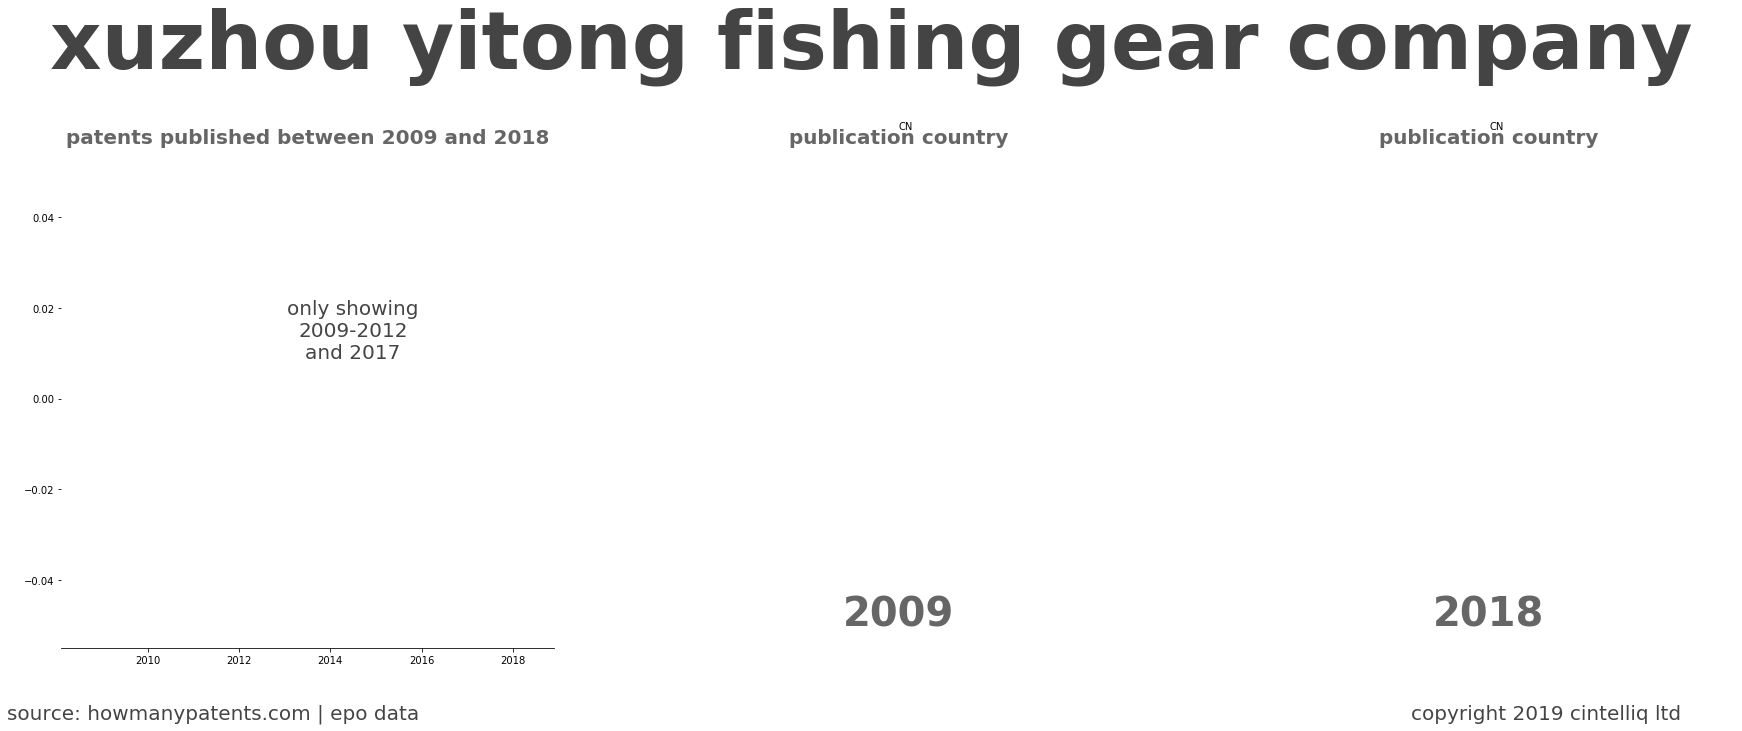 summary of patents for Xuzhou Yitong Fishing Gear Company